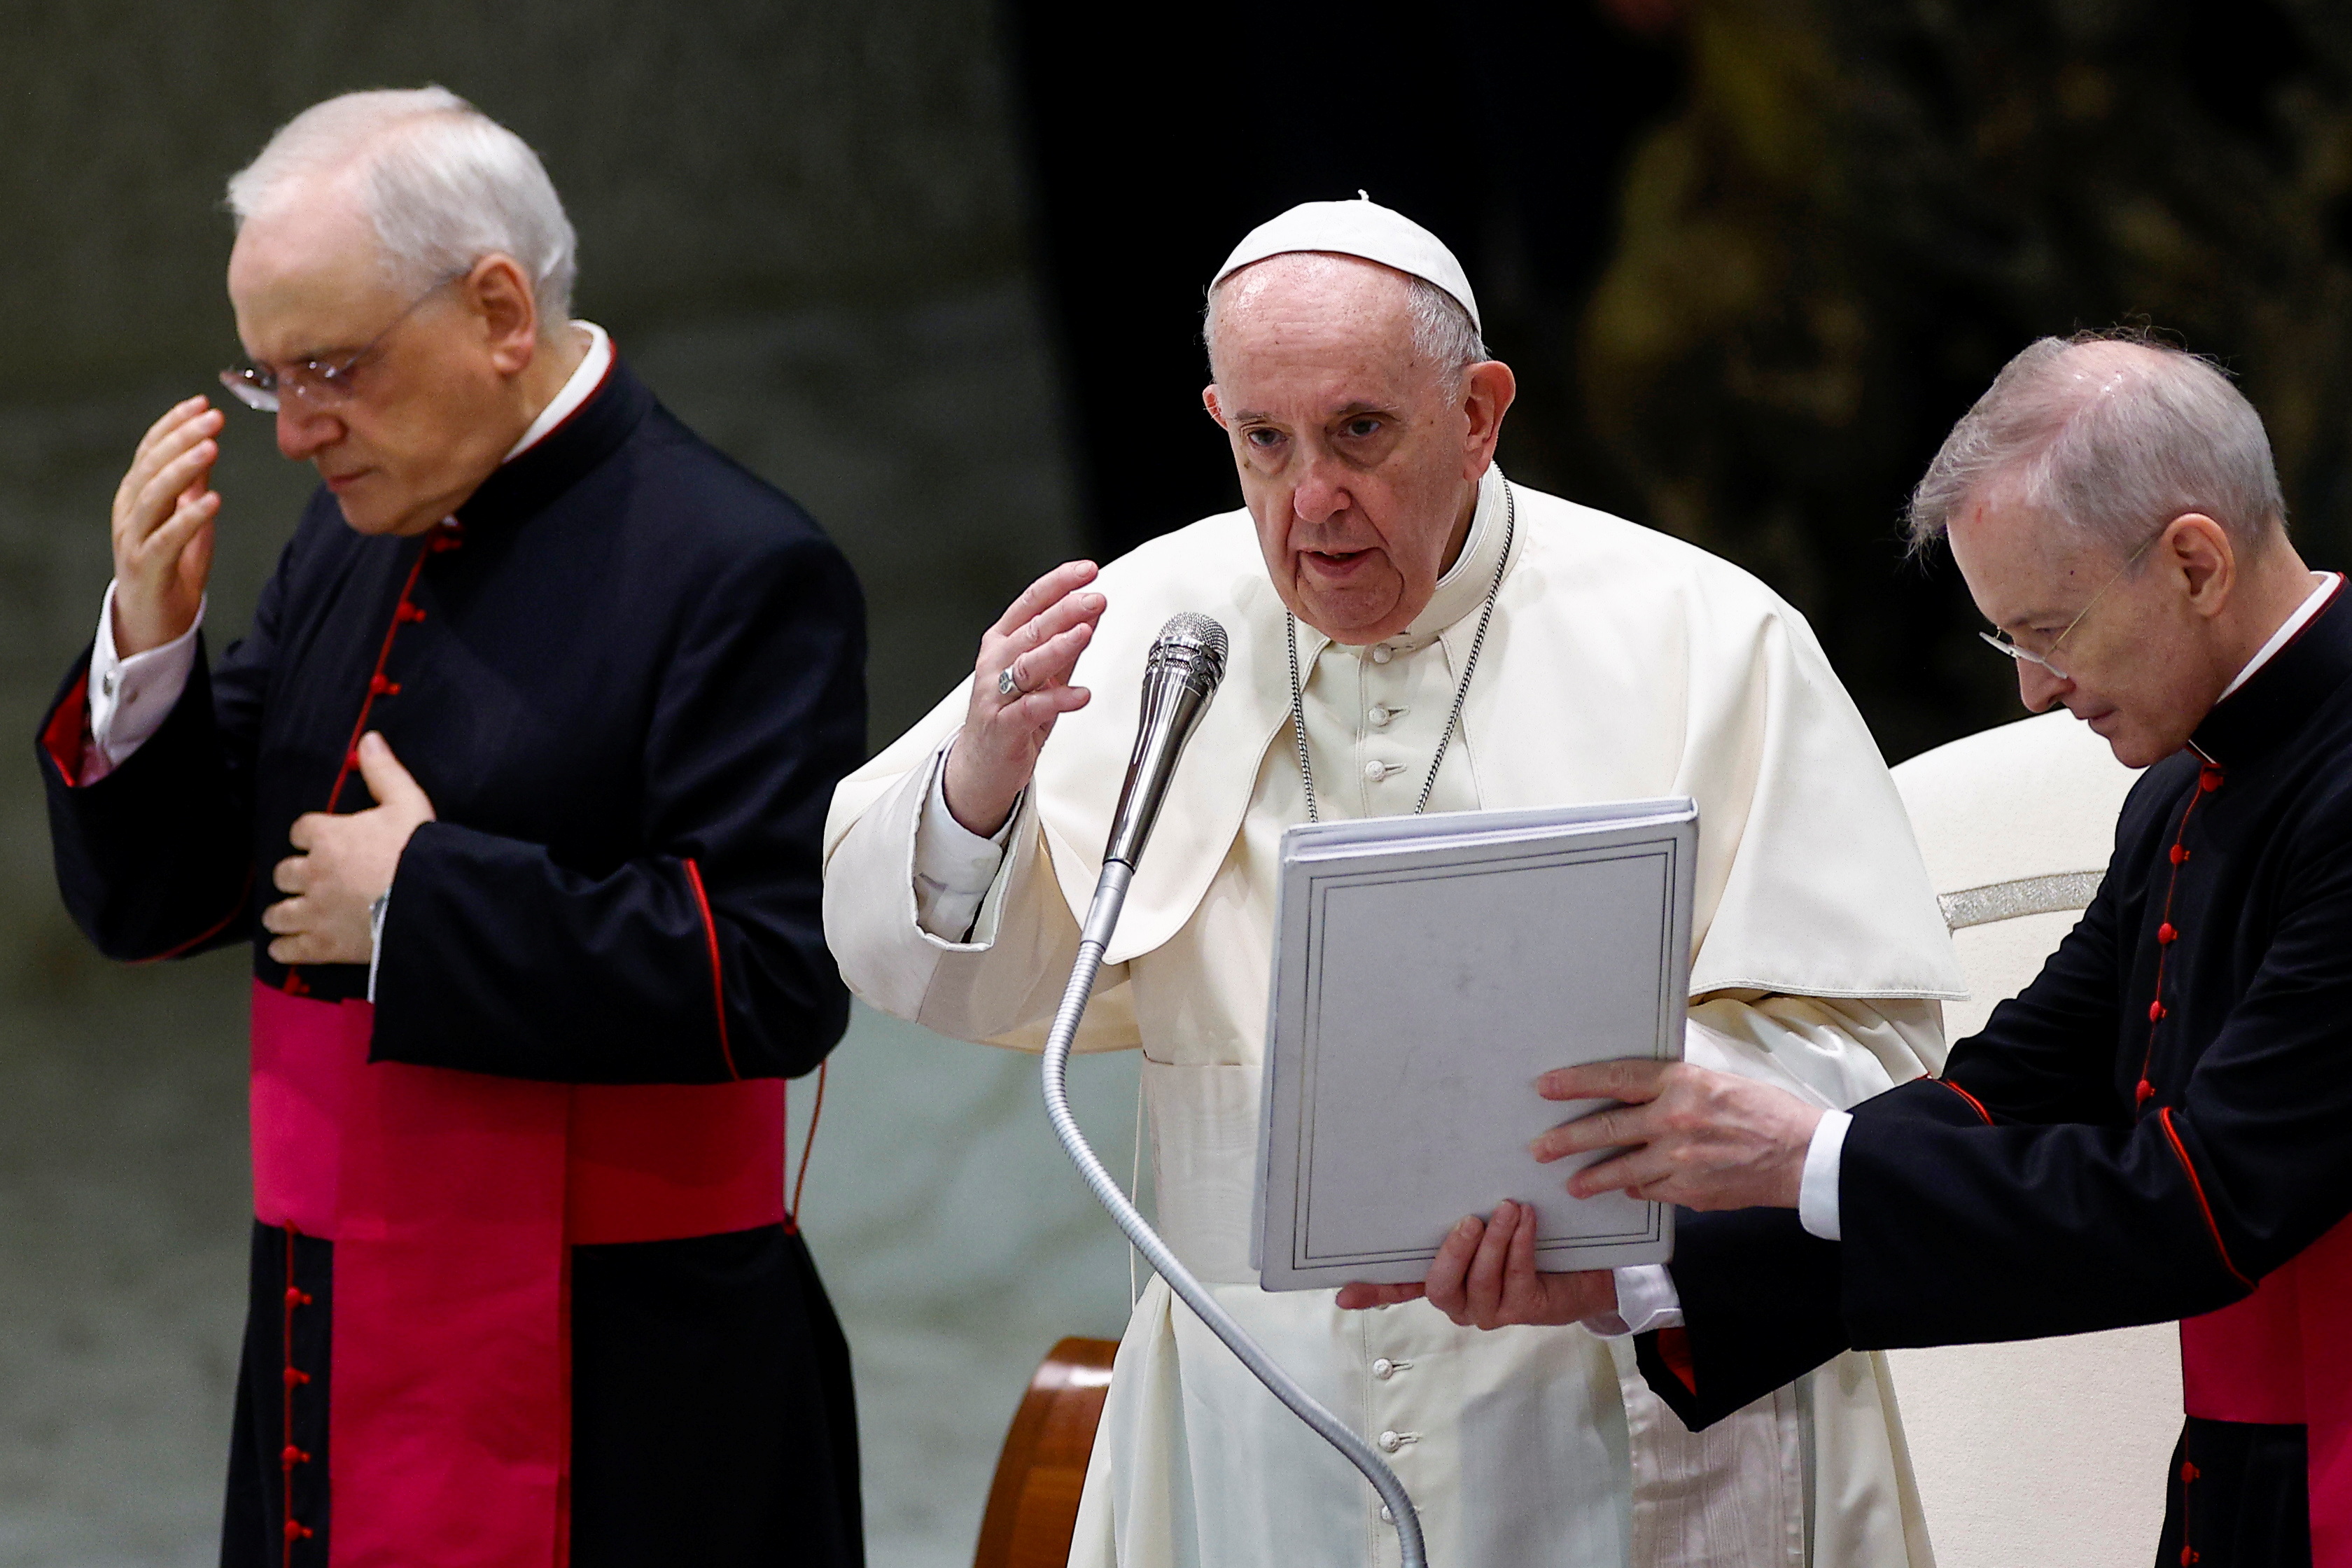 Папа Франциск приймає щотижневу аудієнцію в залі Павла VI у Ватикані, 18 серпня 2021 р. REUTERS/Гульєльмо Мангіапан